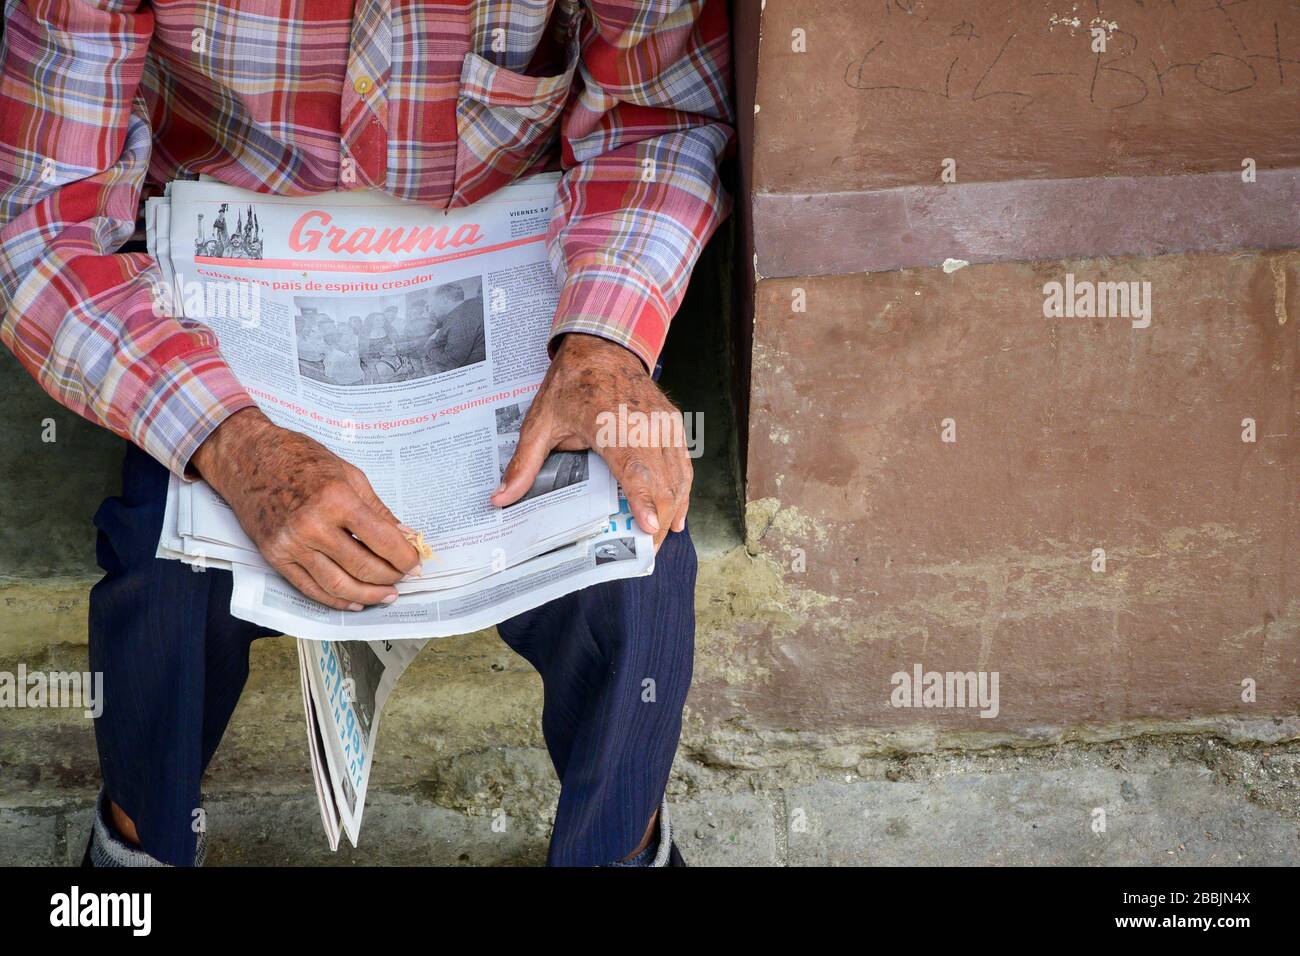 Granma, das Zeitungen verkauft, ist die offizielle Zeitung des Zentralkomitees der Kommunistischen Partei Kubas, Havanna, Kuba Stockfoto